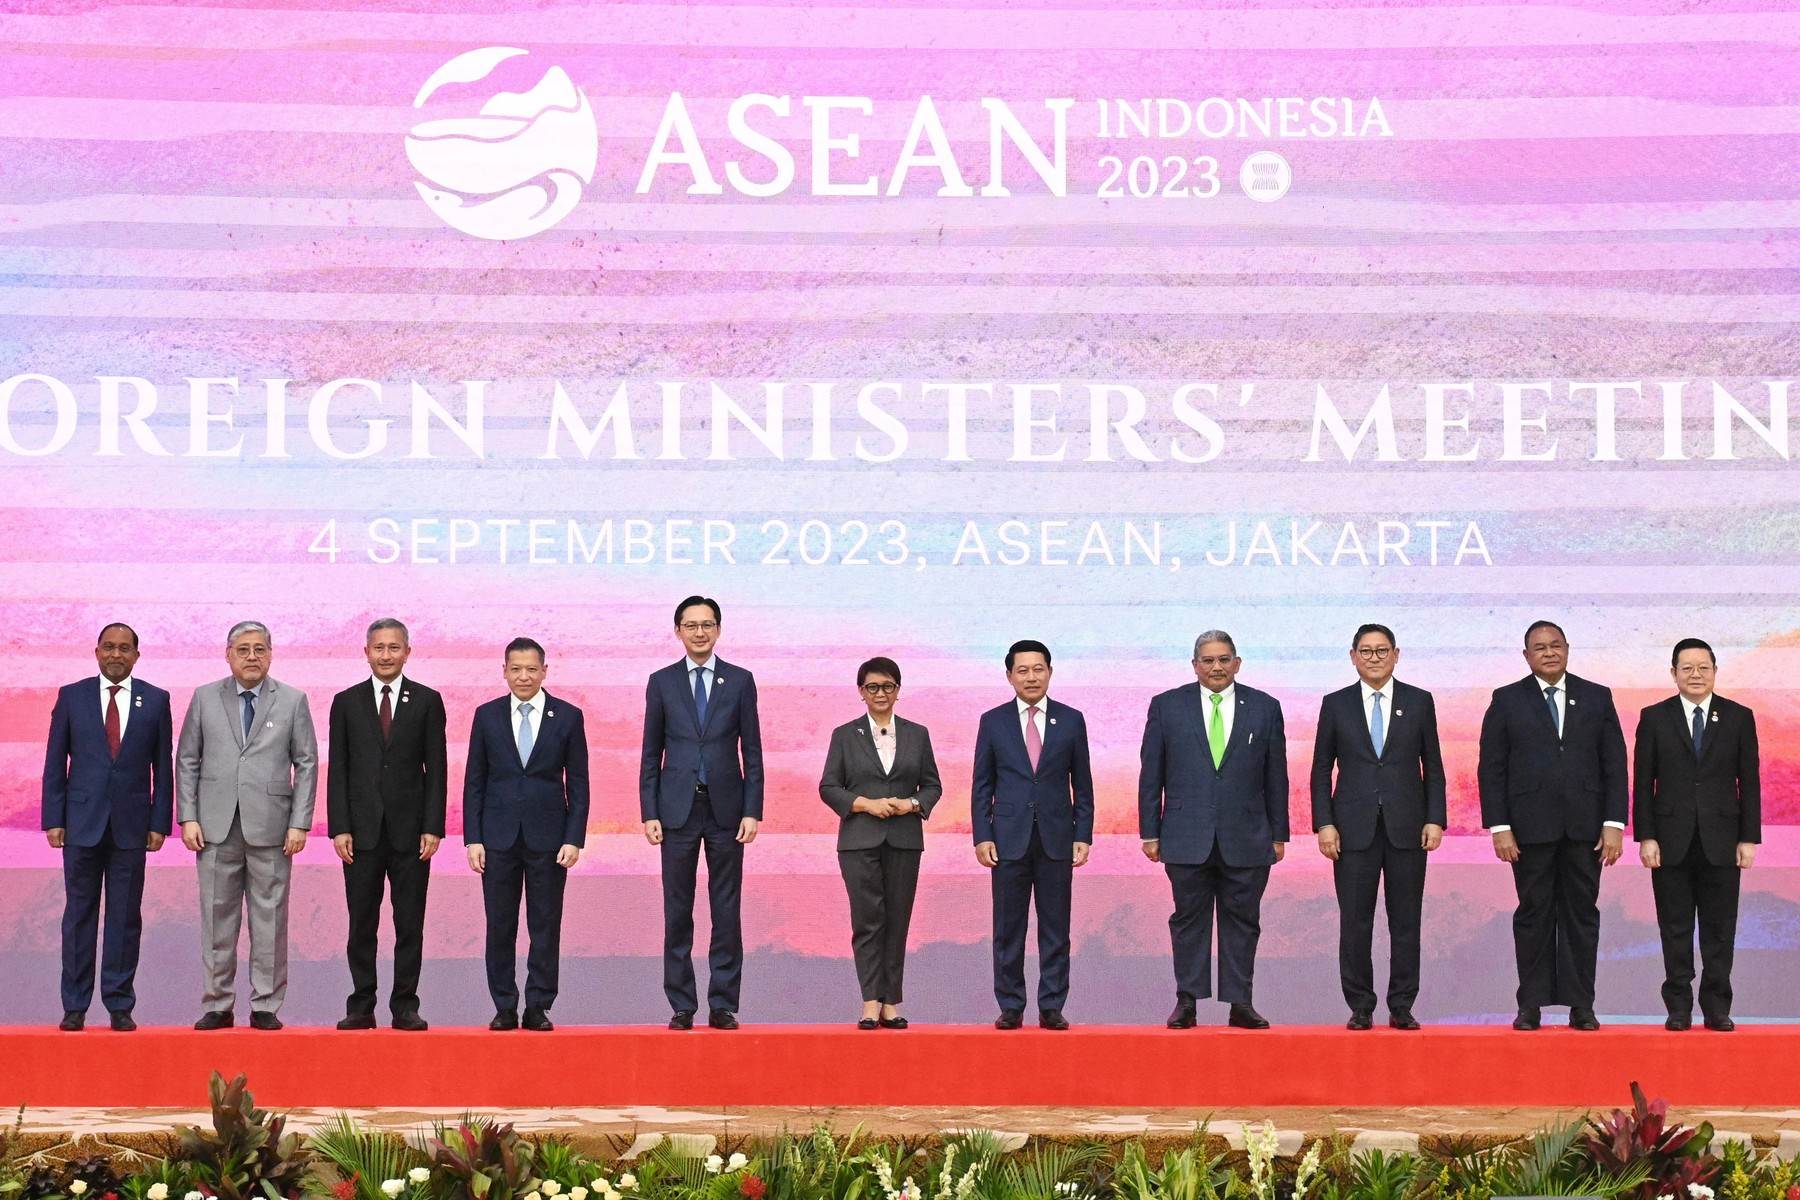  Sastanak ministara vanjskih poslova članica ASEAN-a u Jakarti 